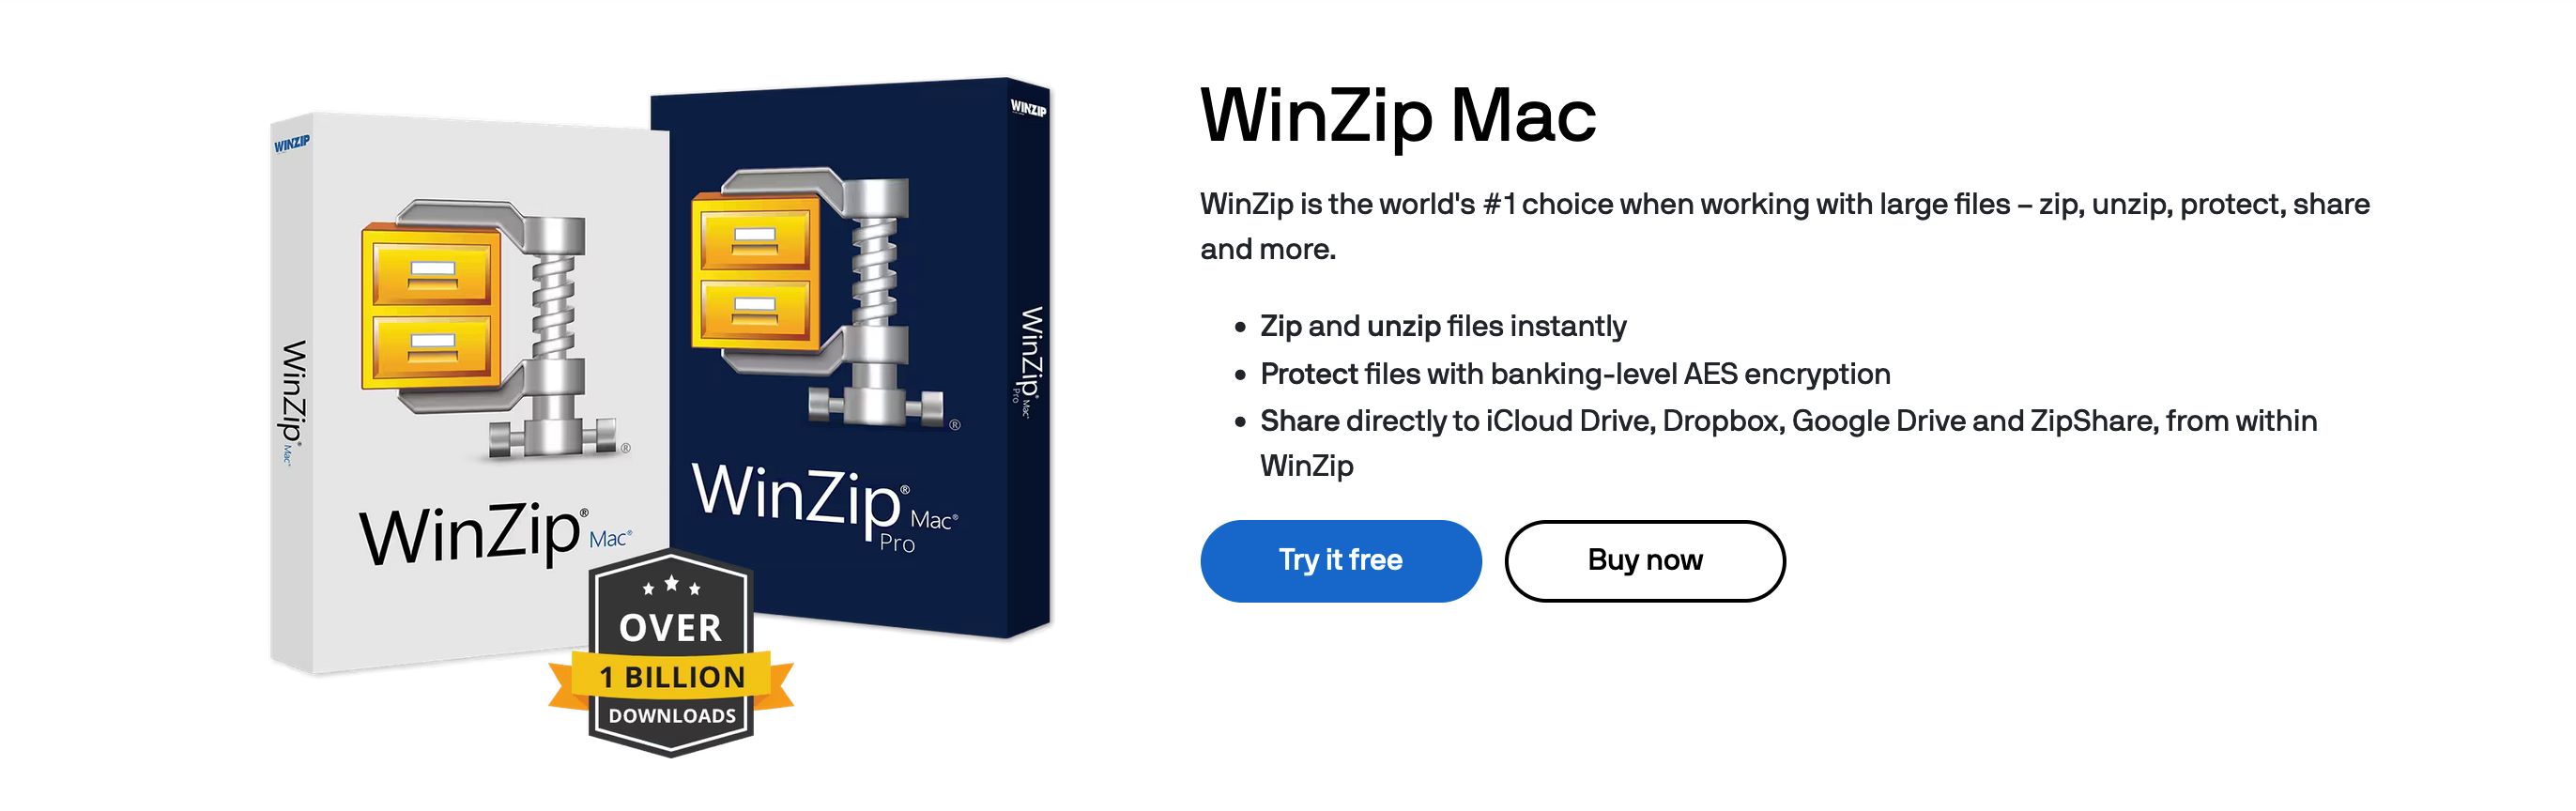 Offizielle Website von WinZip.